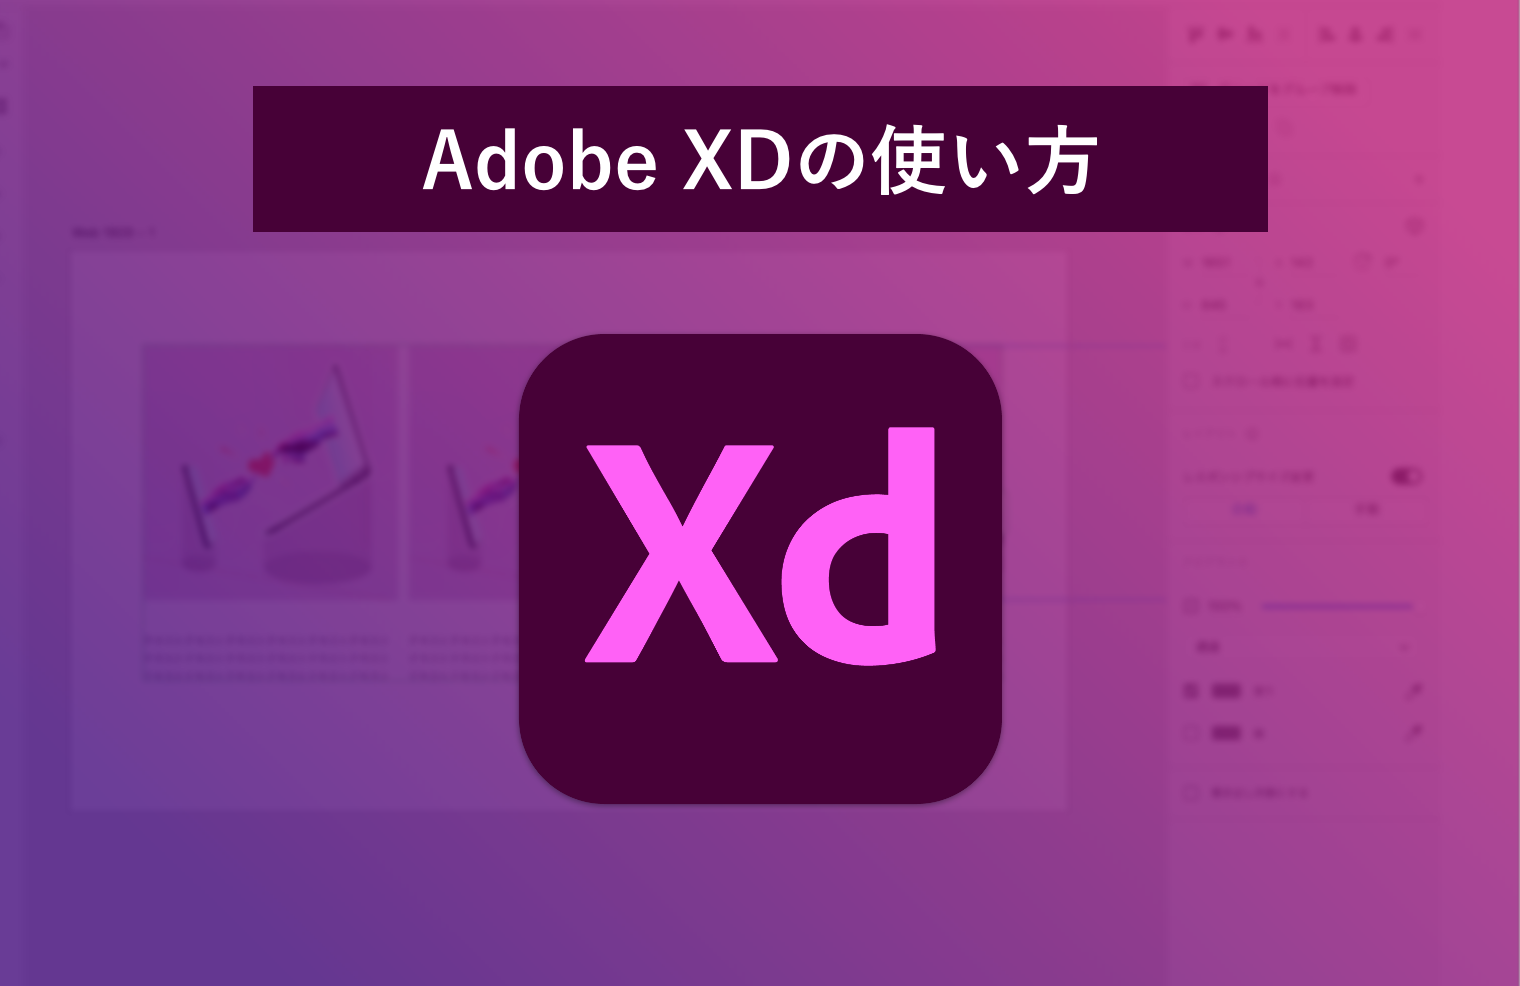 【基本機能】Adobe XDのまず知っておきたい使い方や基本知識を解説